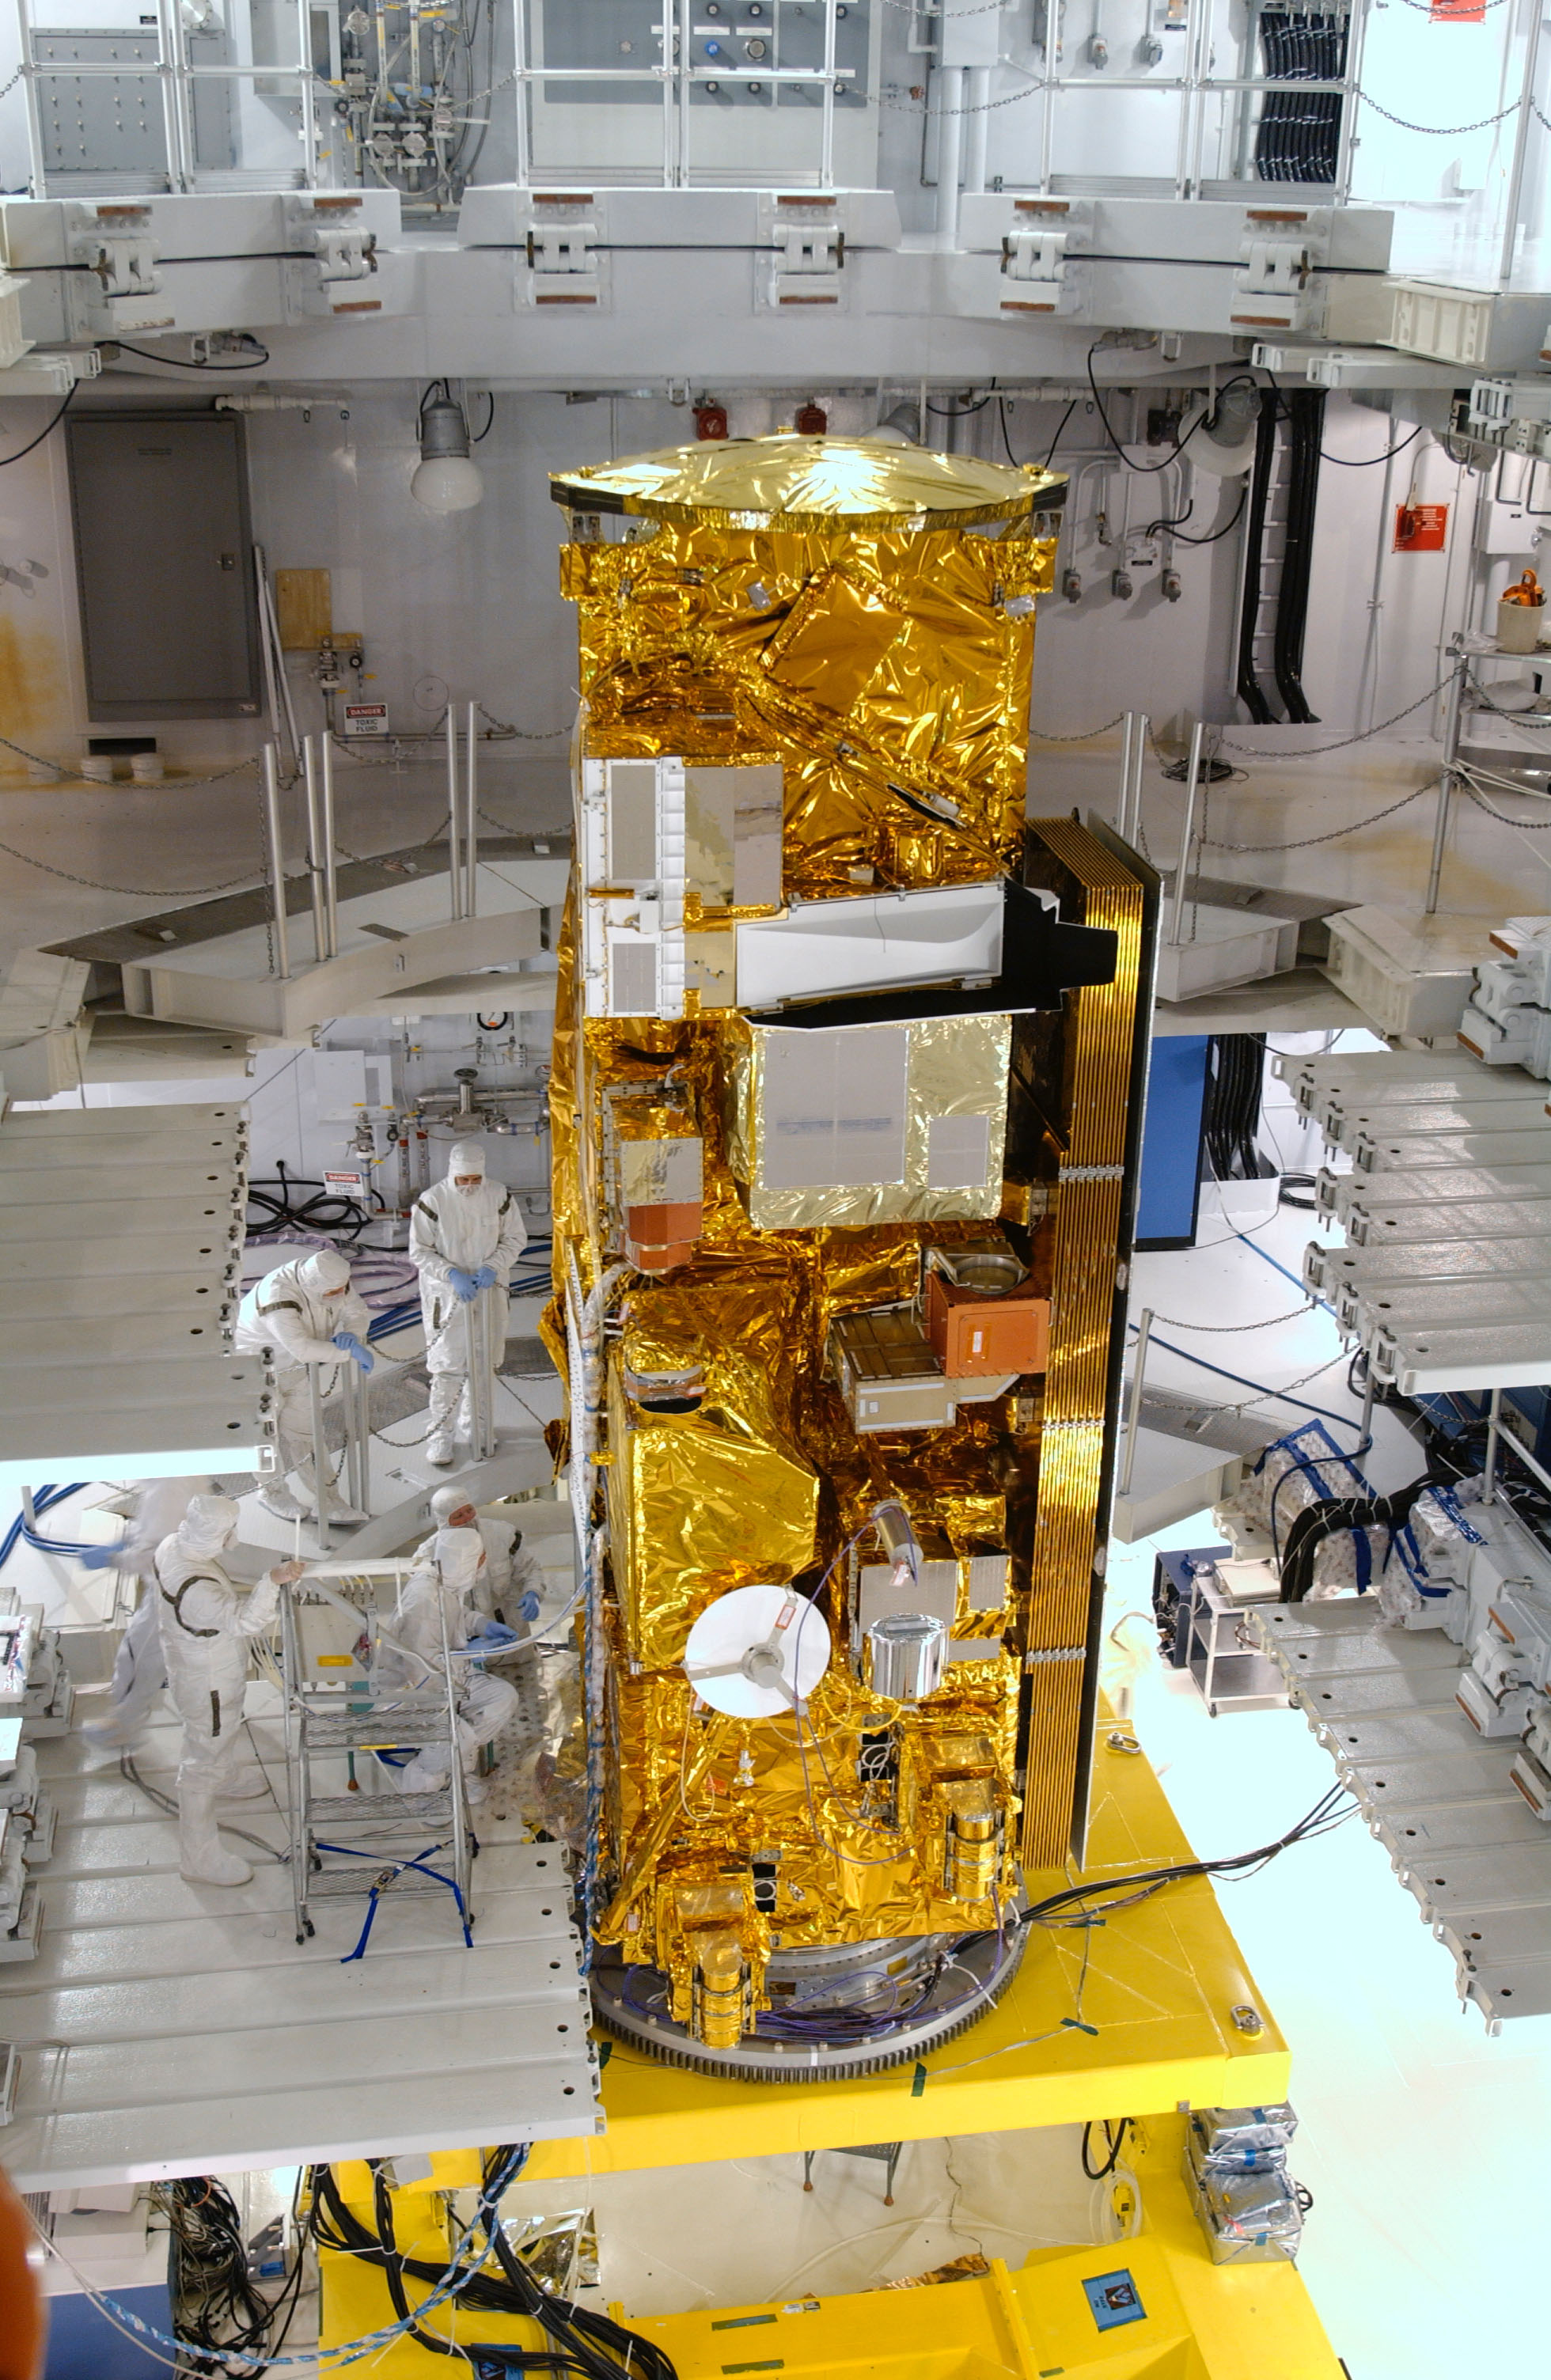 NASA's Aqua satellite in high bay